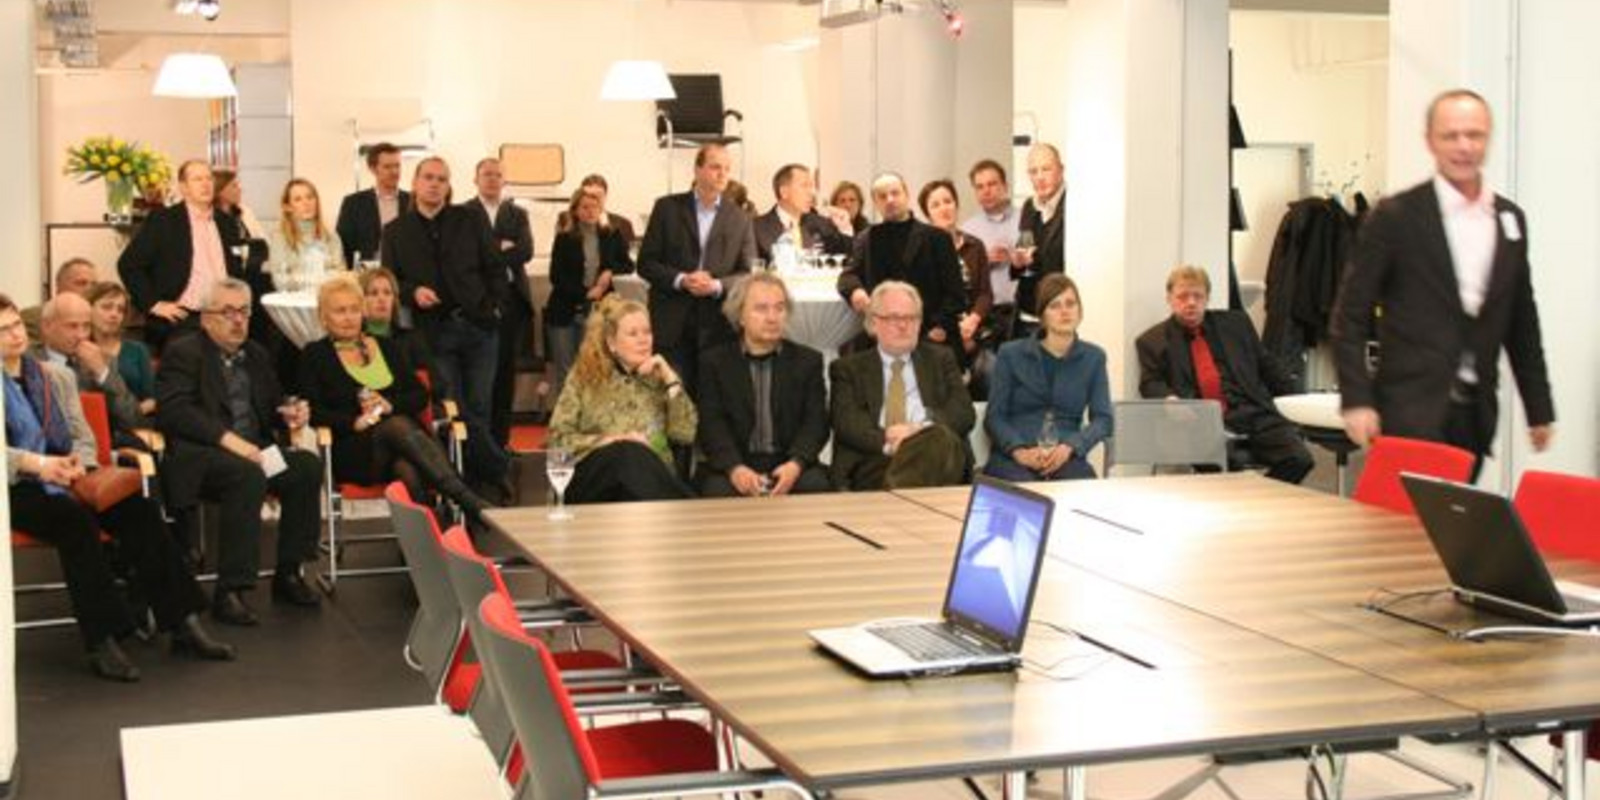 Ausstellungseröffnung "Wilkhahn Netzwerk" bei pro office Hannover Bild 15